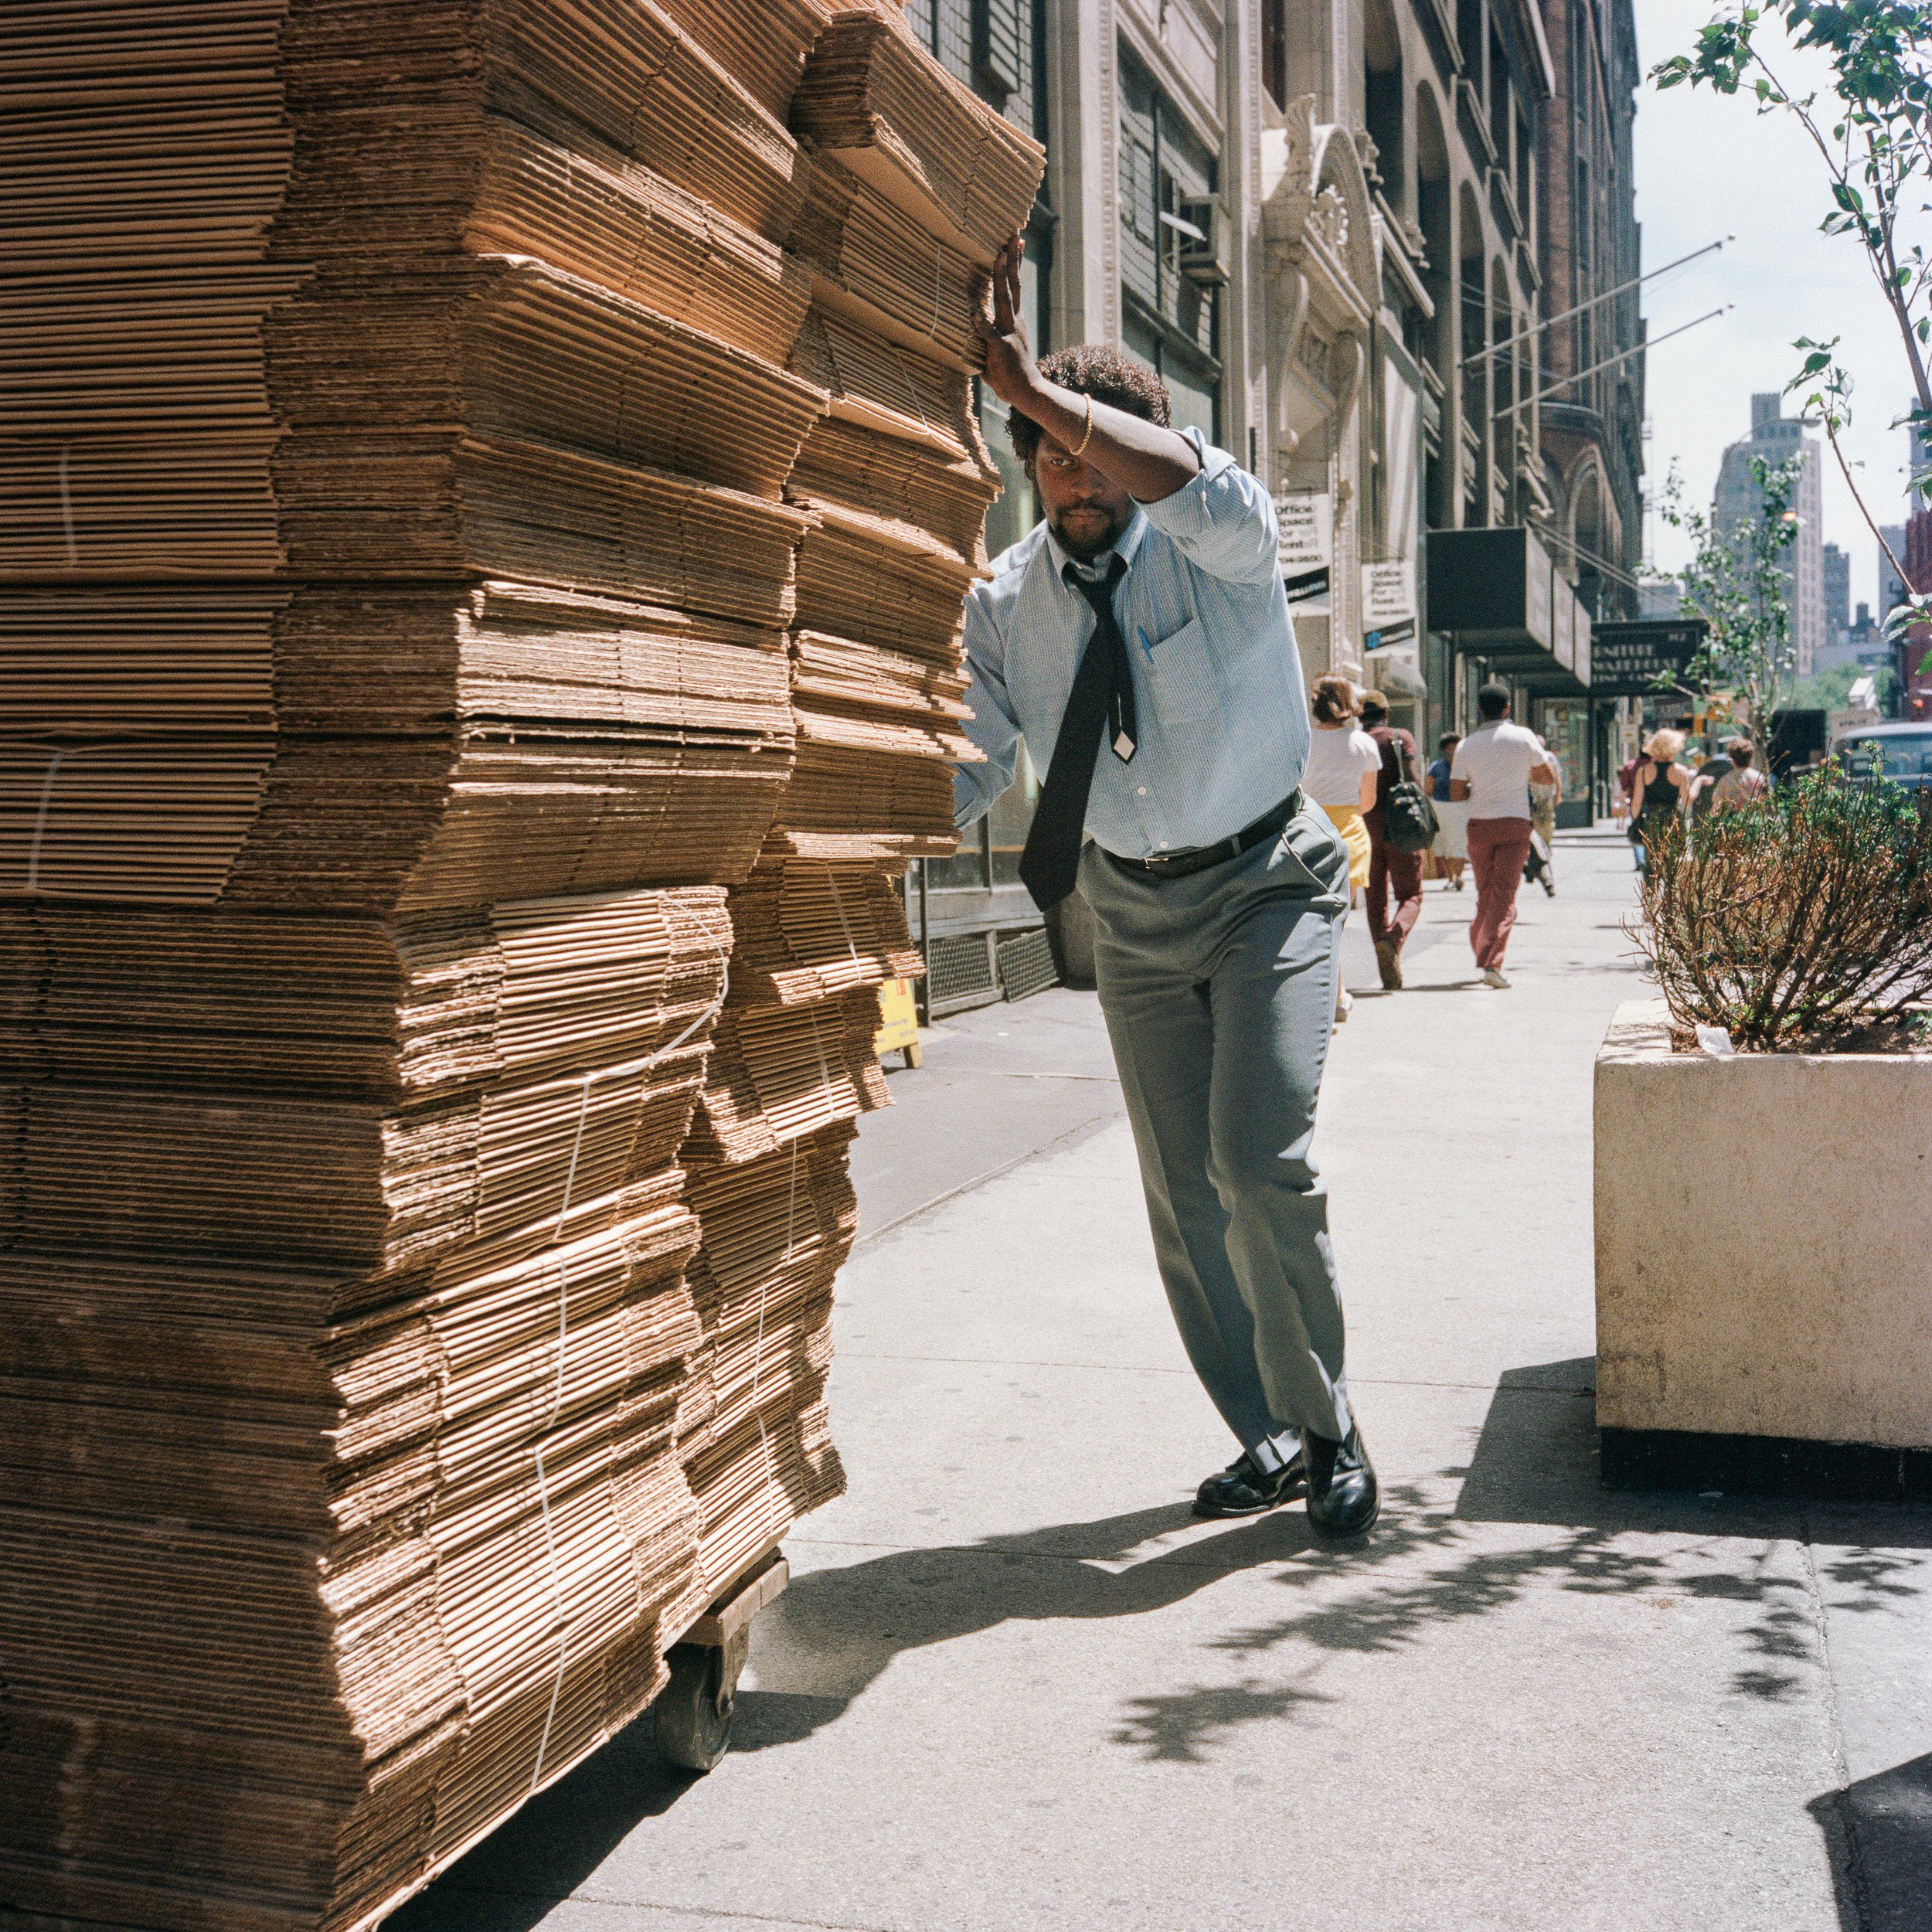   Man Pushing Stack of Cardboard, 1985  